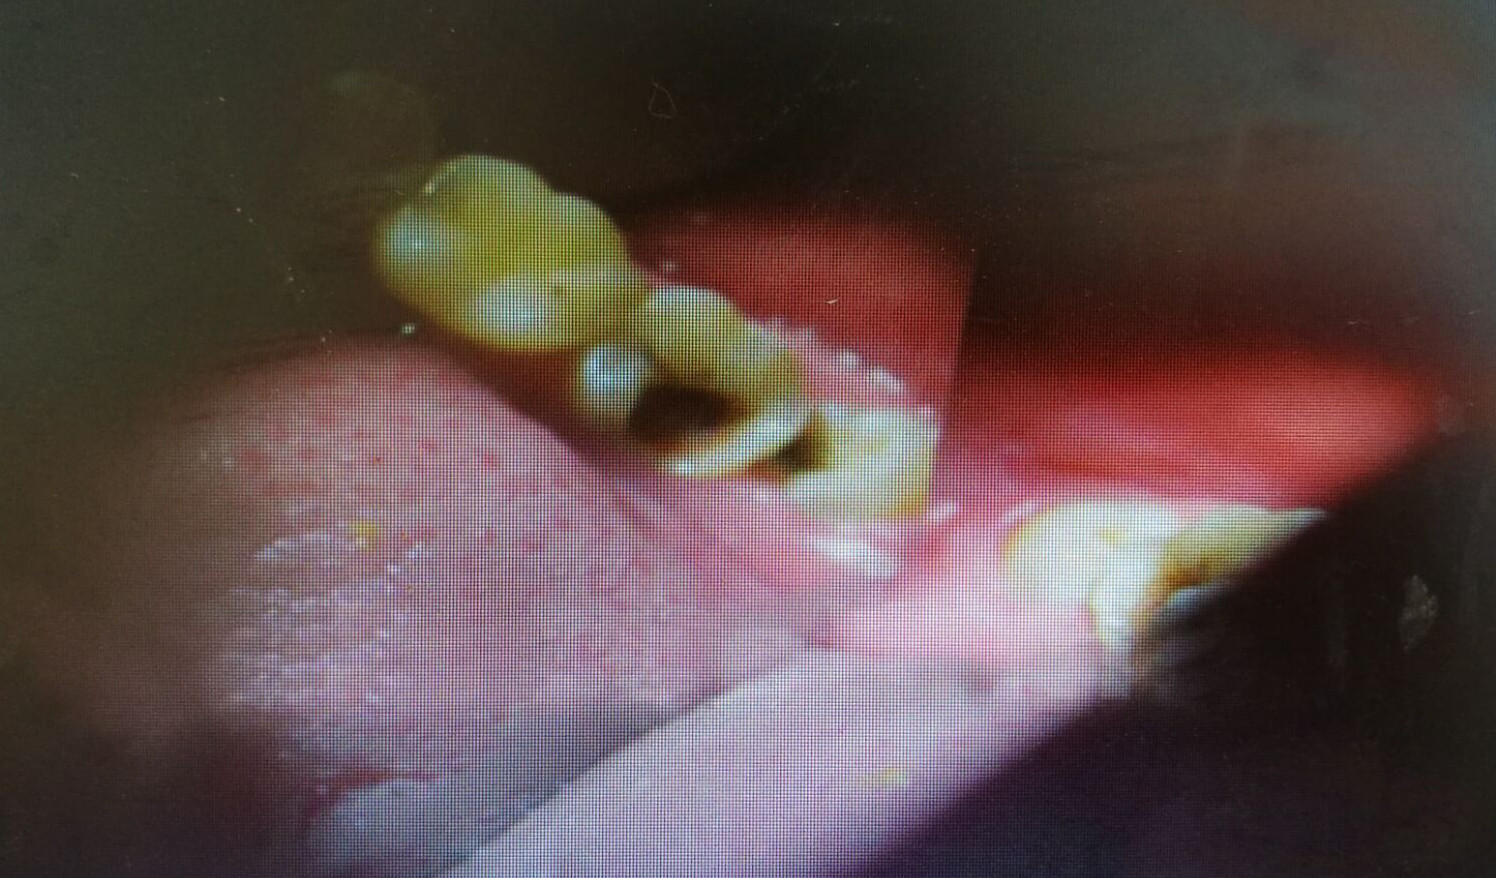 逆行性牙髓炎图片